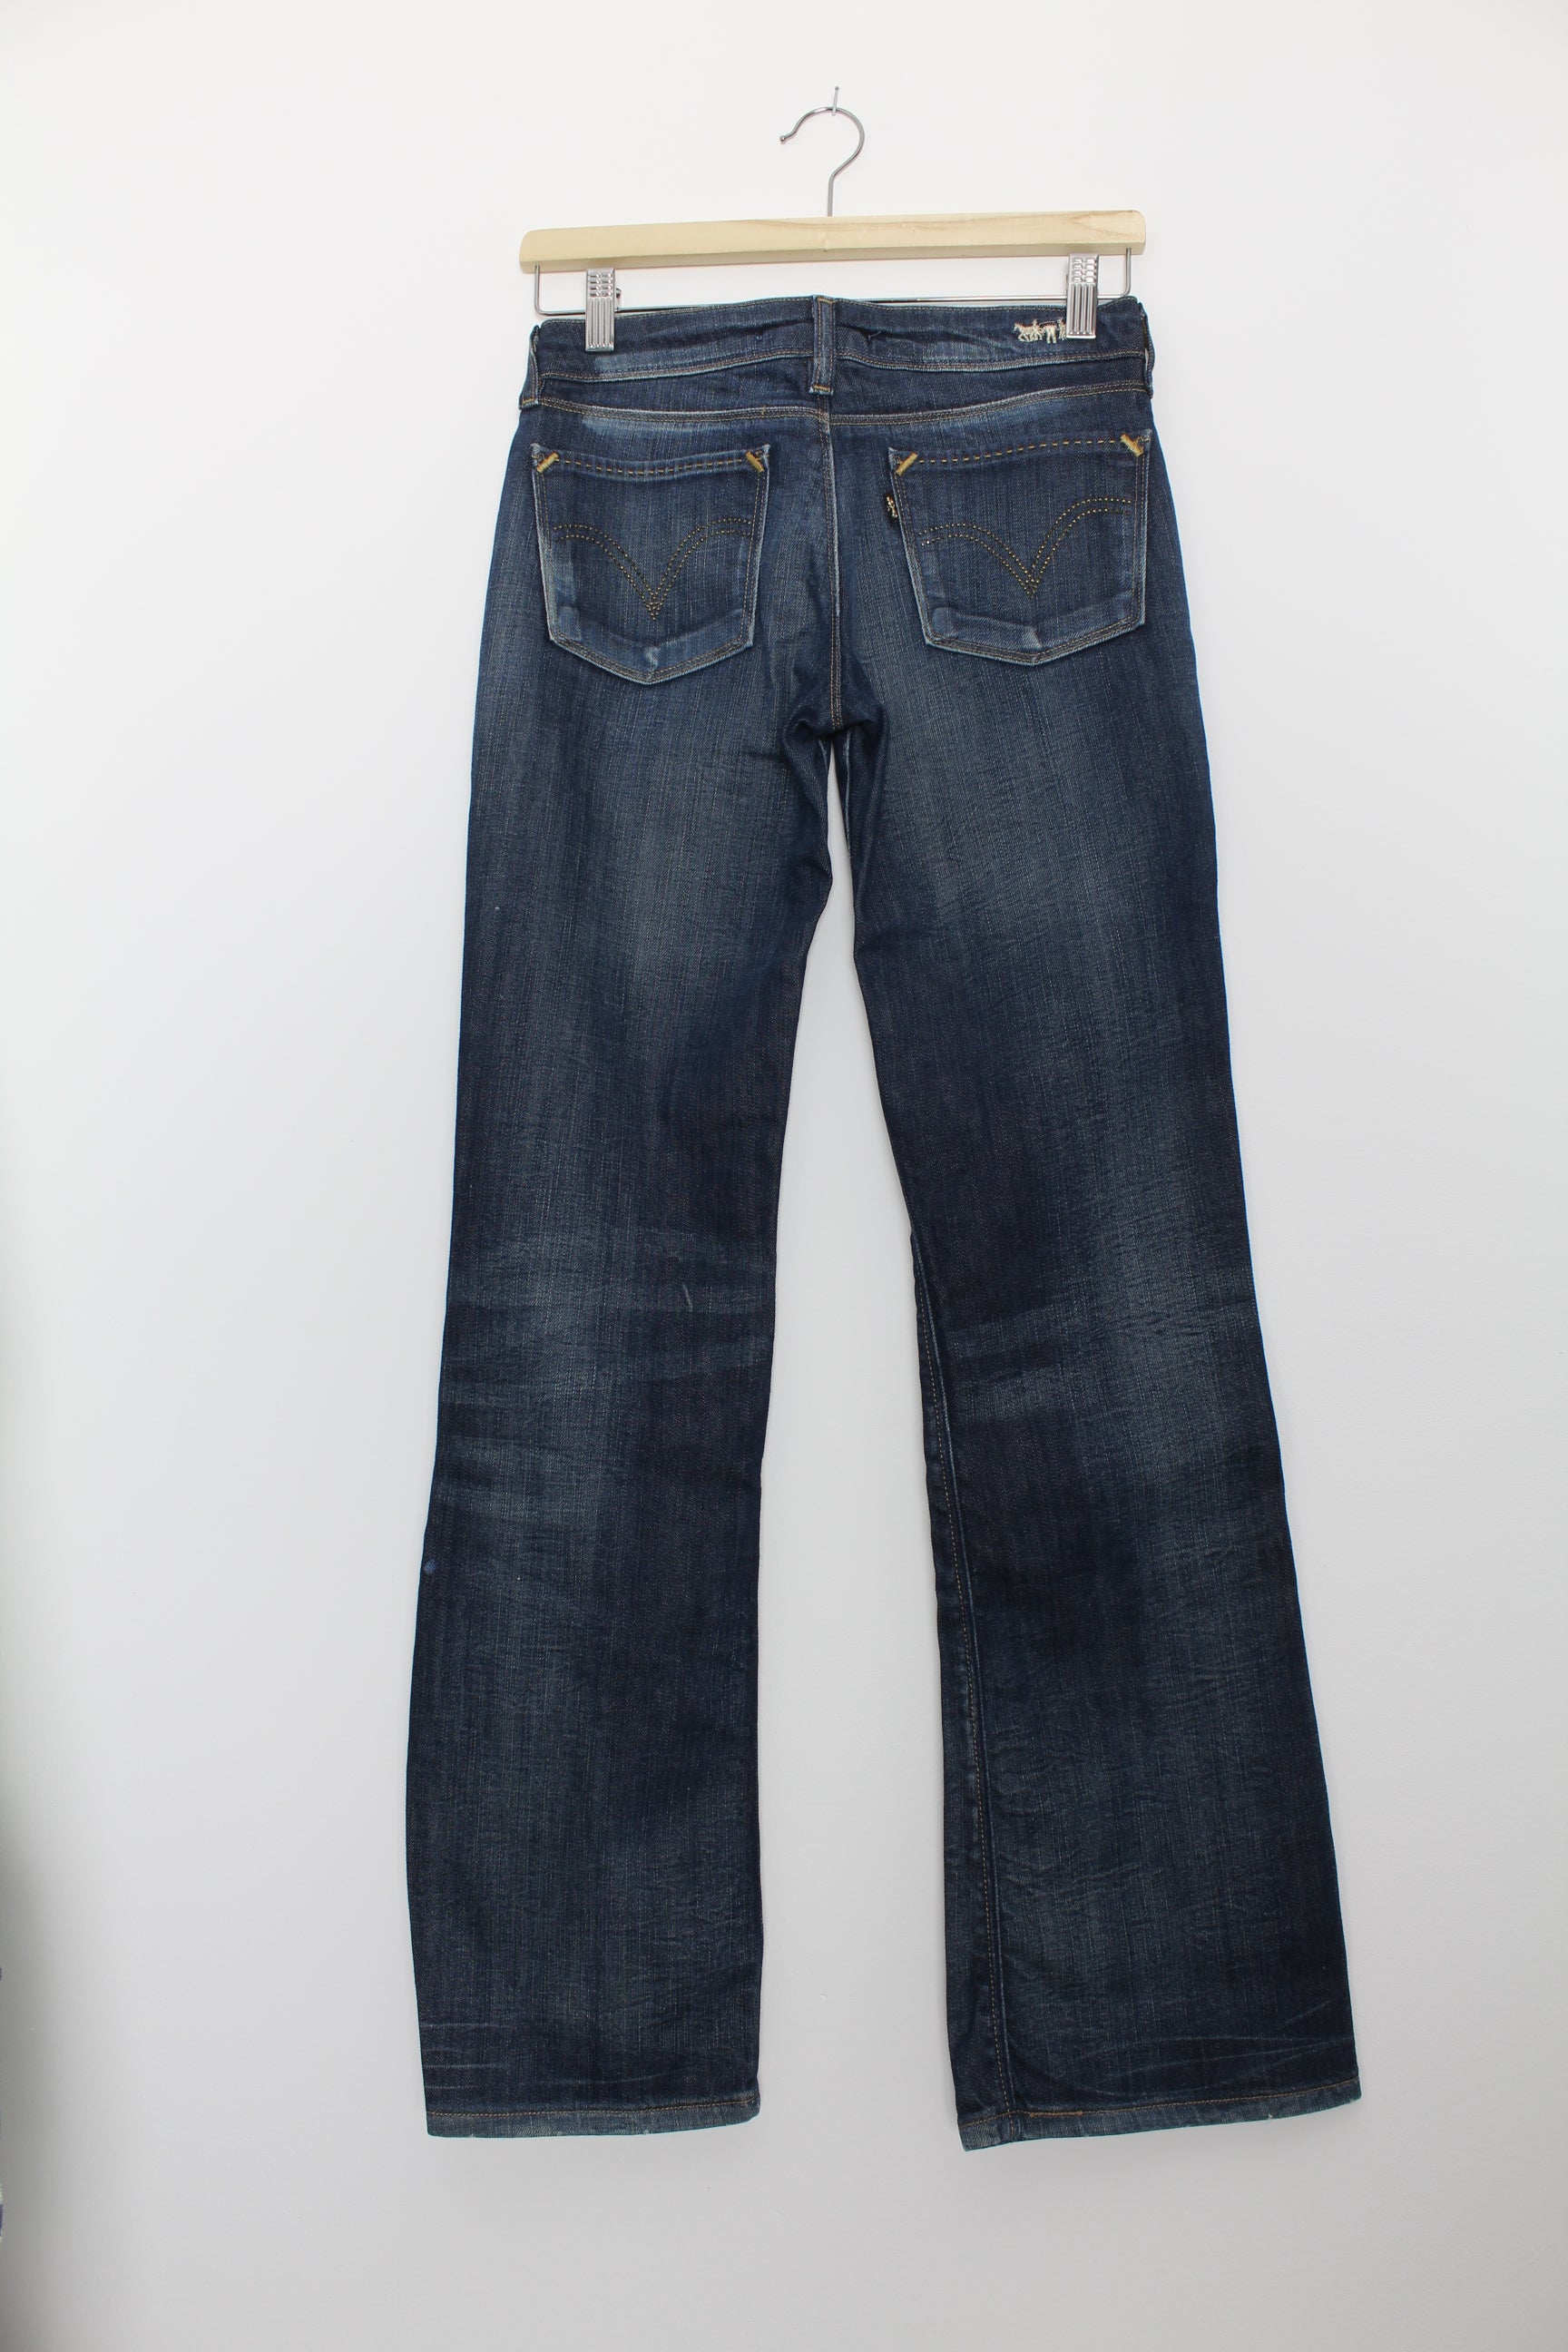 Gasvormig Gewoon Dressoir Levi's special edition denim jeans maat 27/32 – Meisje met de parels